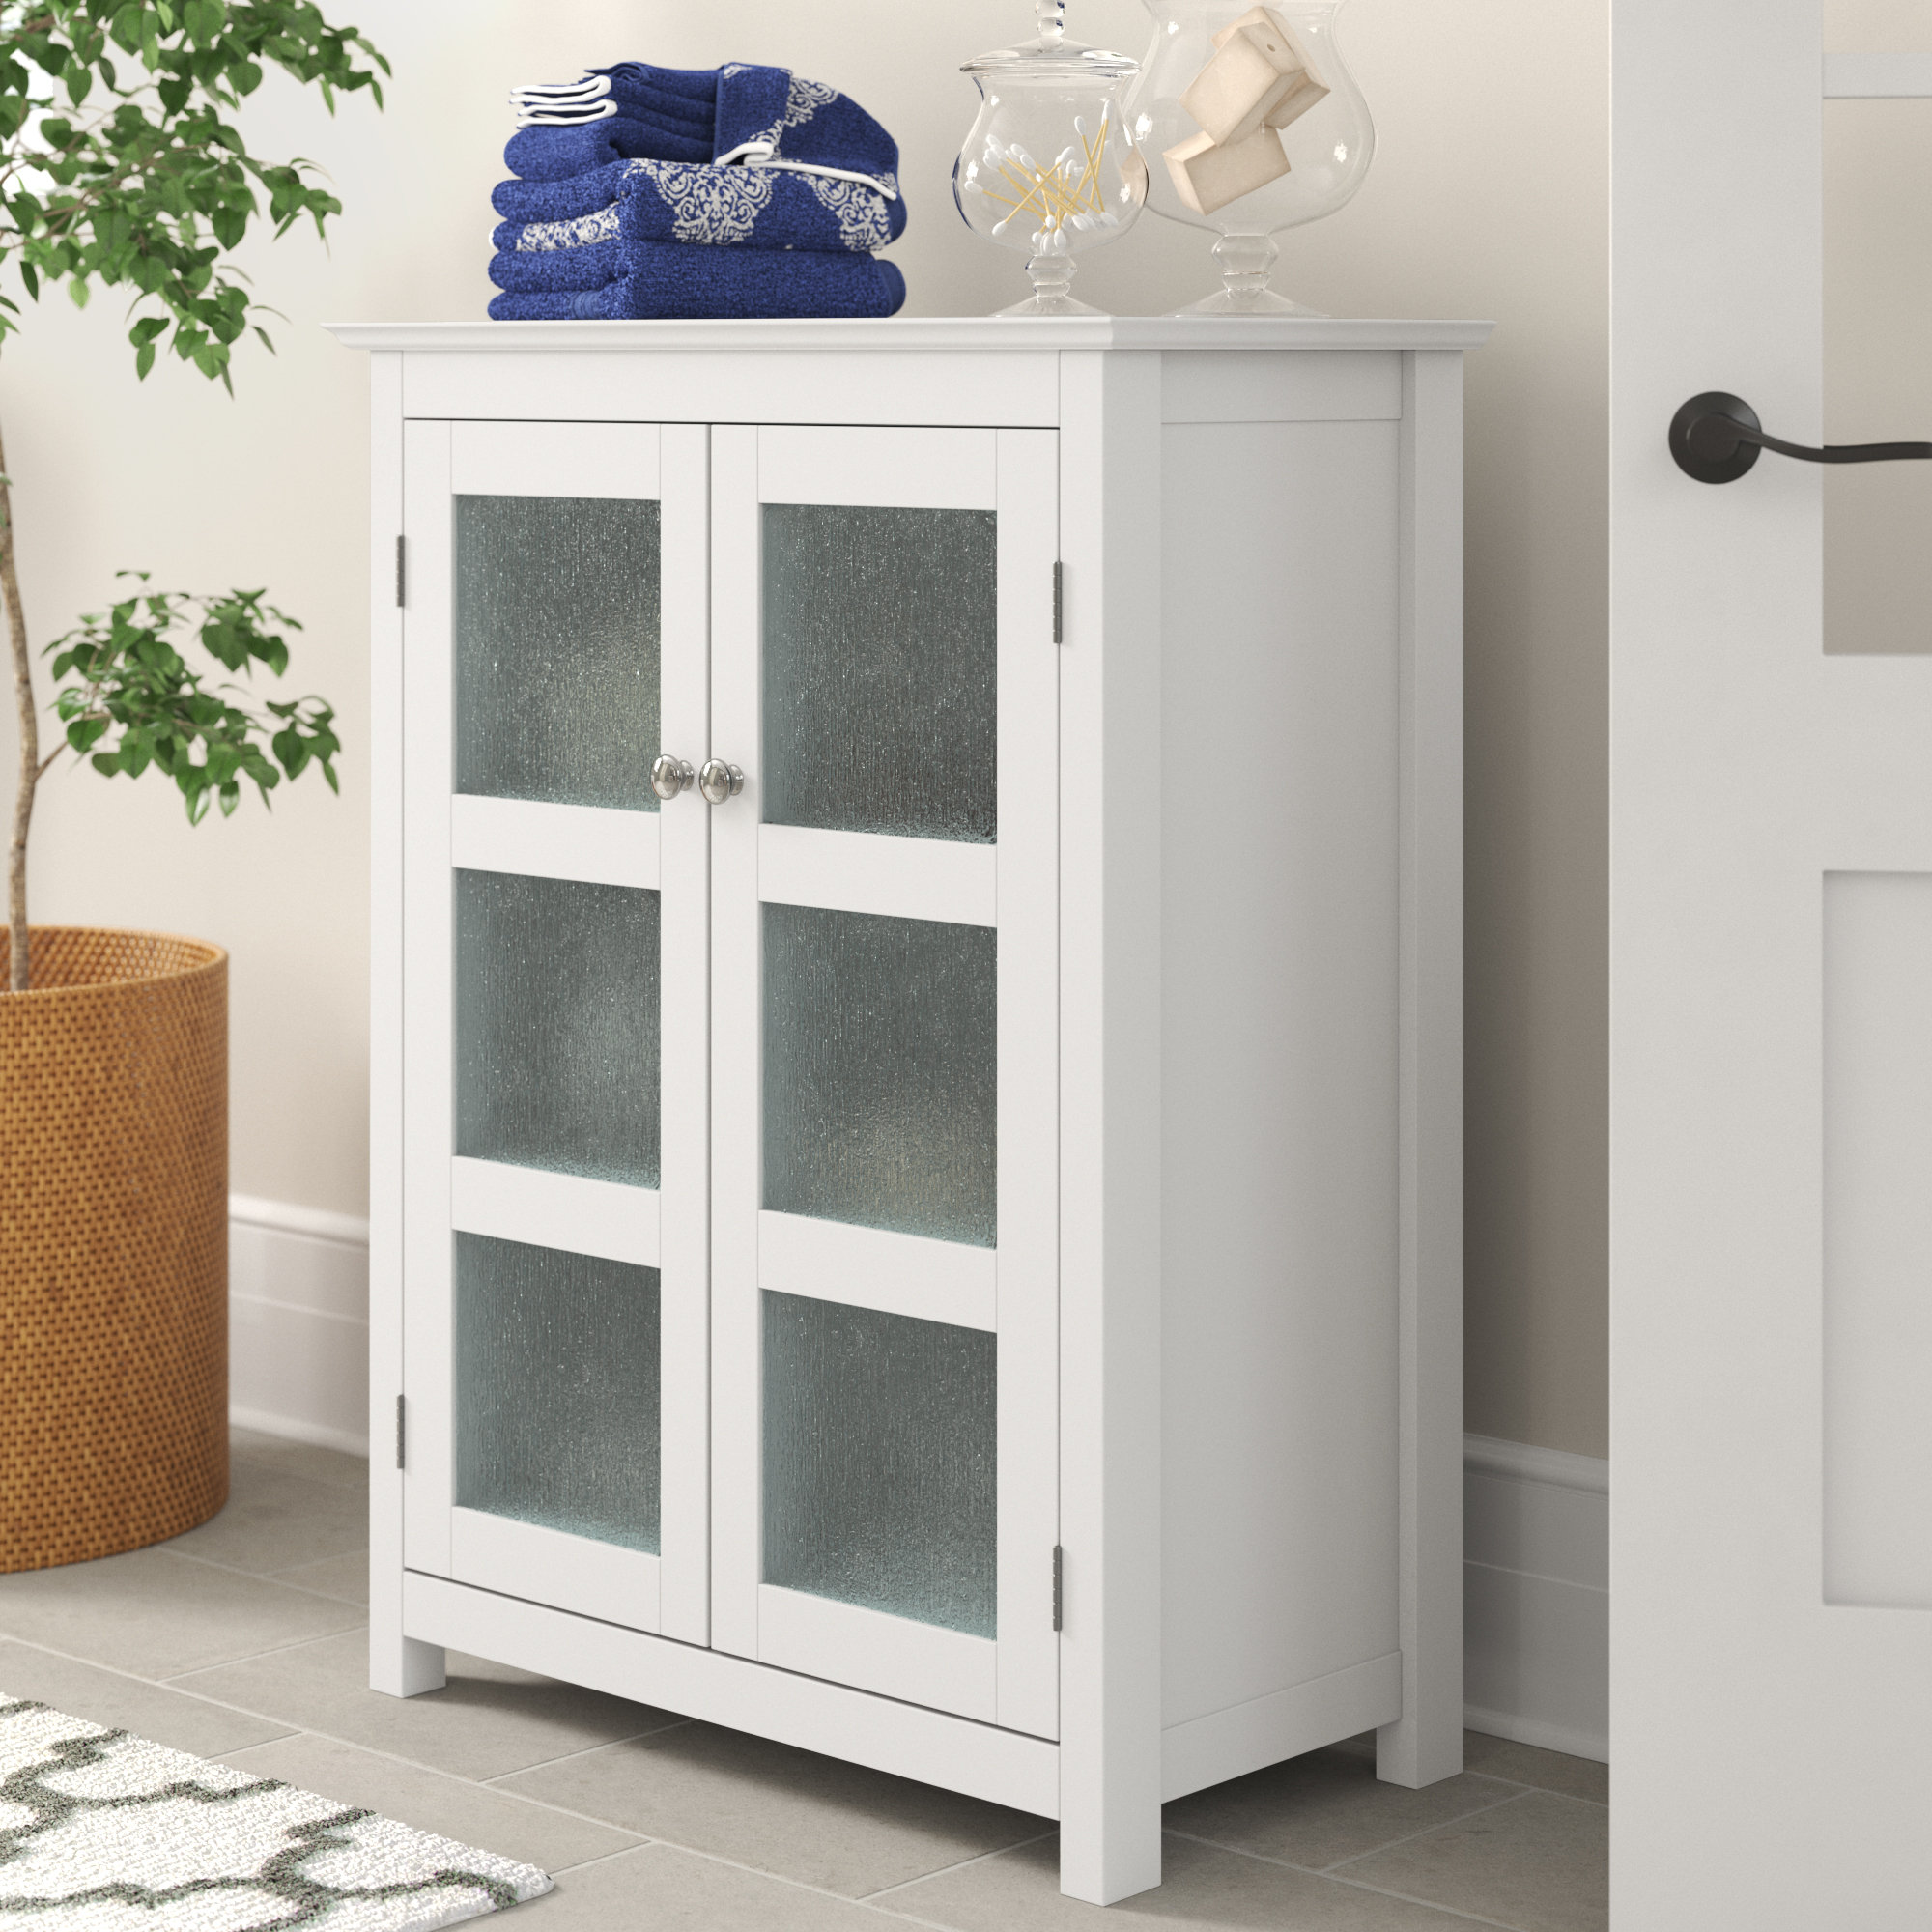 https://assets.wfcdn.com/im/59380725/compr-r85/2144/214492481/leist-teamson-home-conner-27-x-32-floor-storage-cabinet-white.jpg